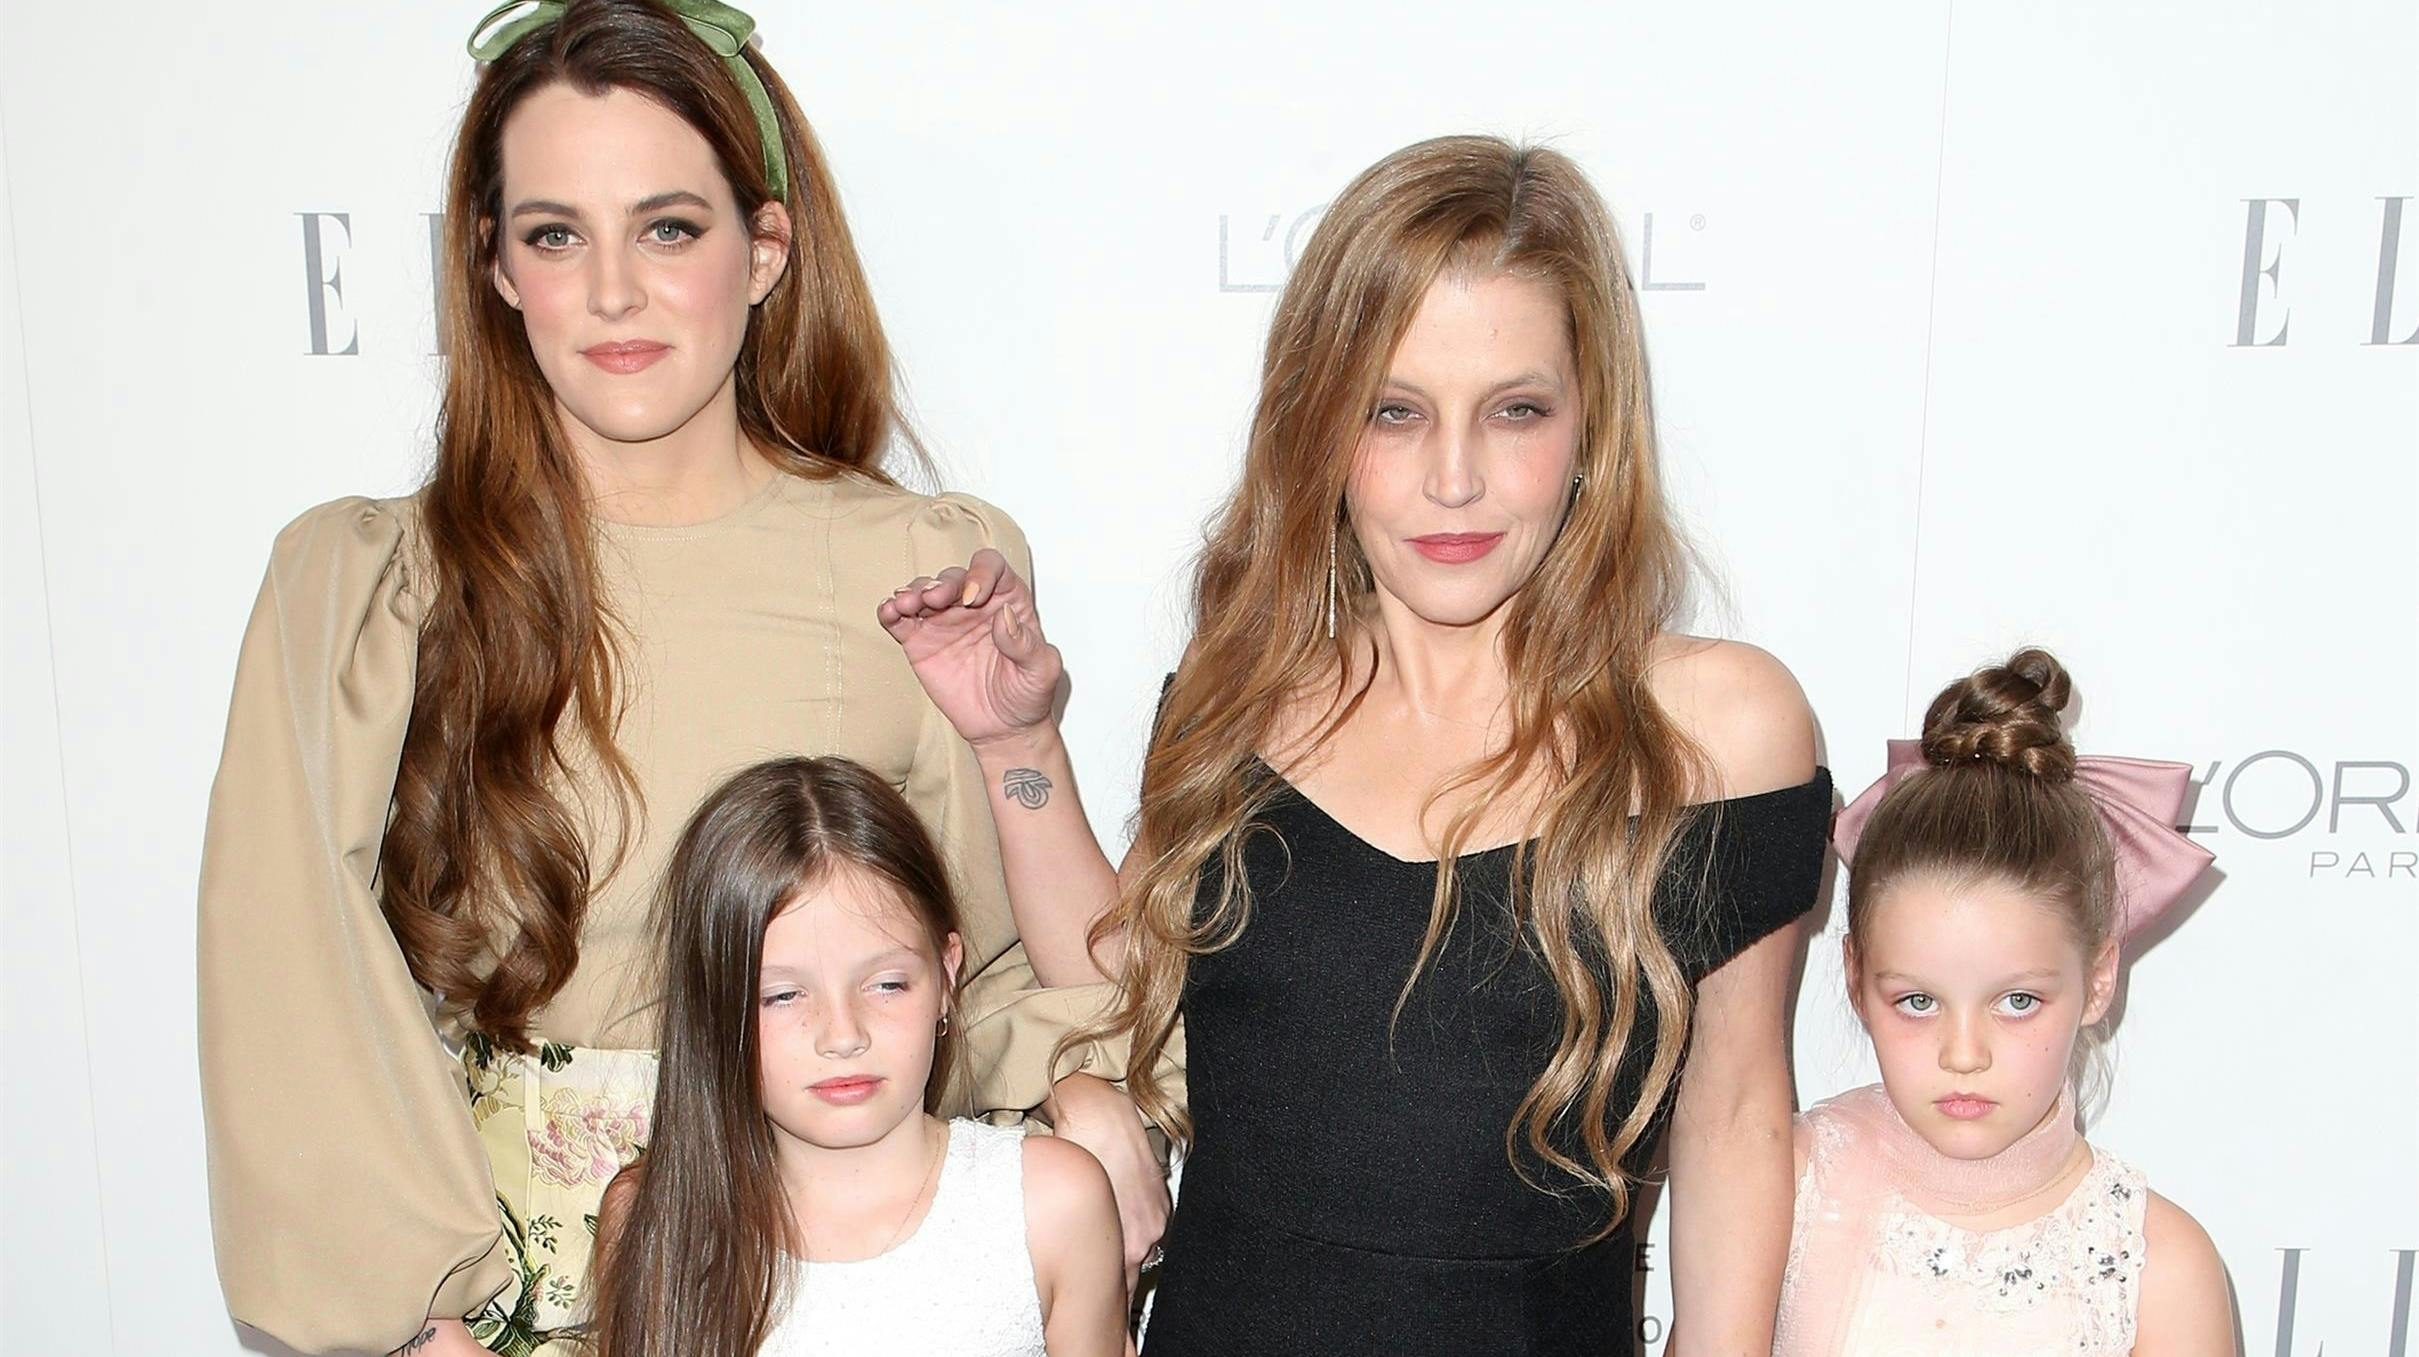 Lisa Marie Presley ses her med sine tre døtre: Riley Keough og tvillingerne Finley og Harper Lockwood. nbsp;